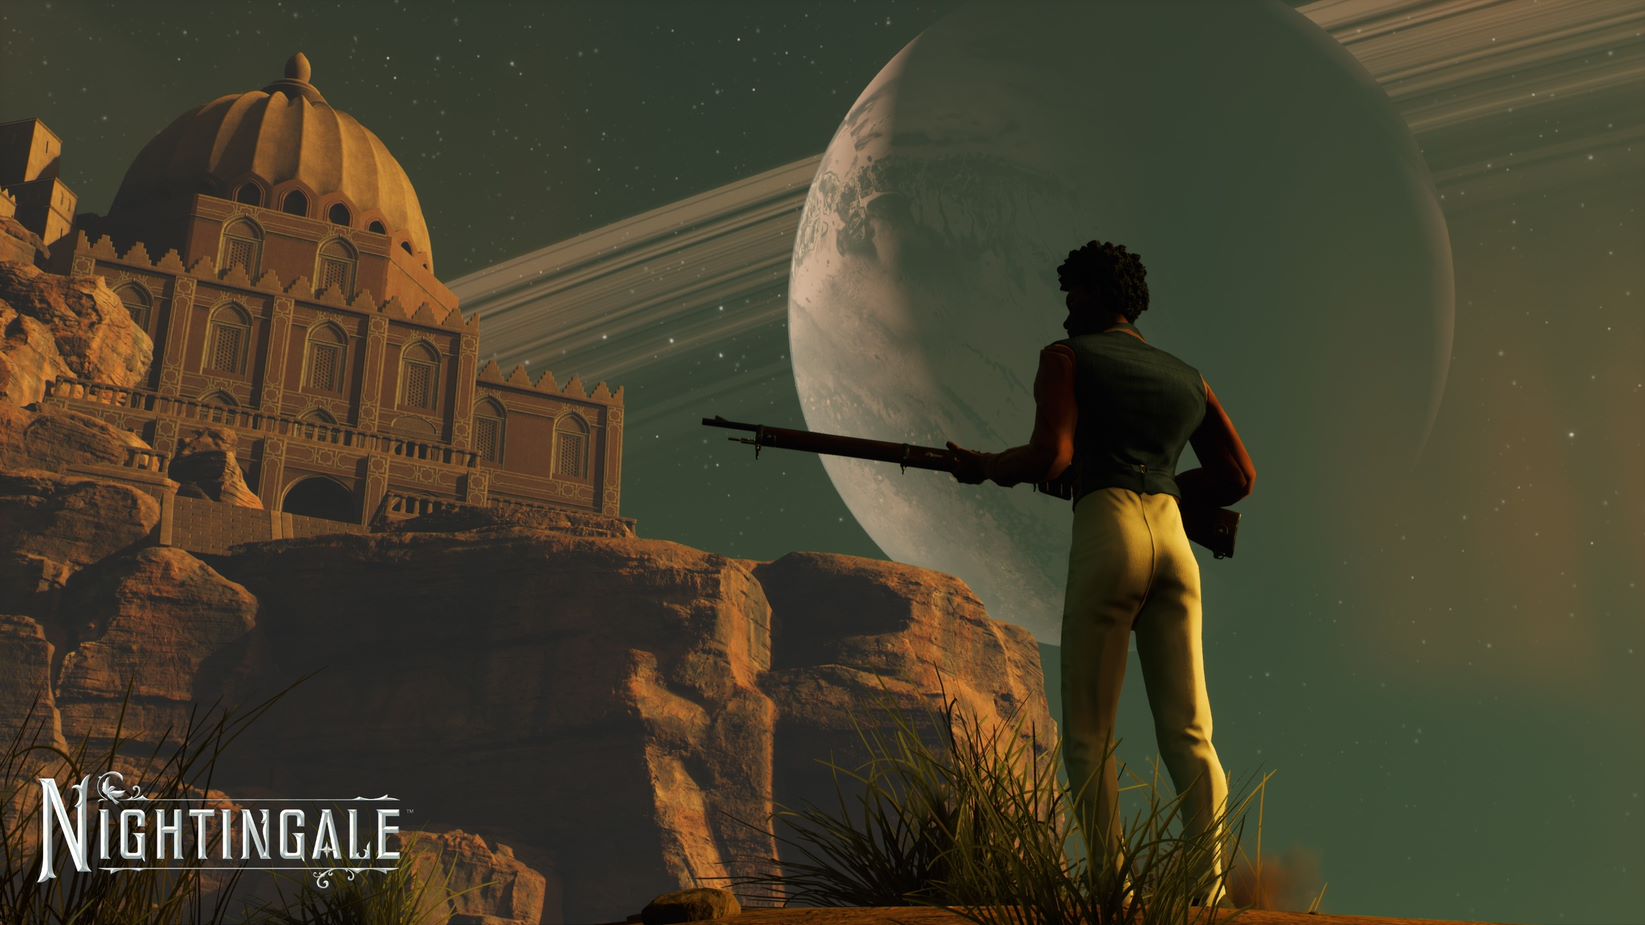 Tangkapan layar dari Nightingale yang menunjukkan pemain memegang senapan dan melihat bangunan berkubah yang indah saat bulan duduk di langit.